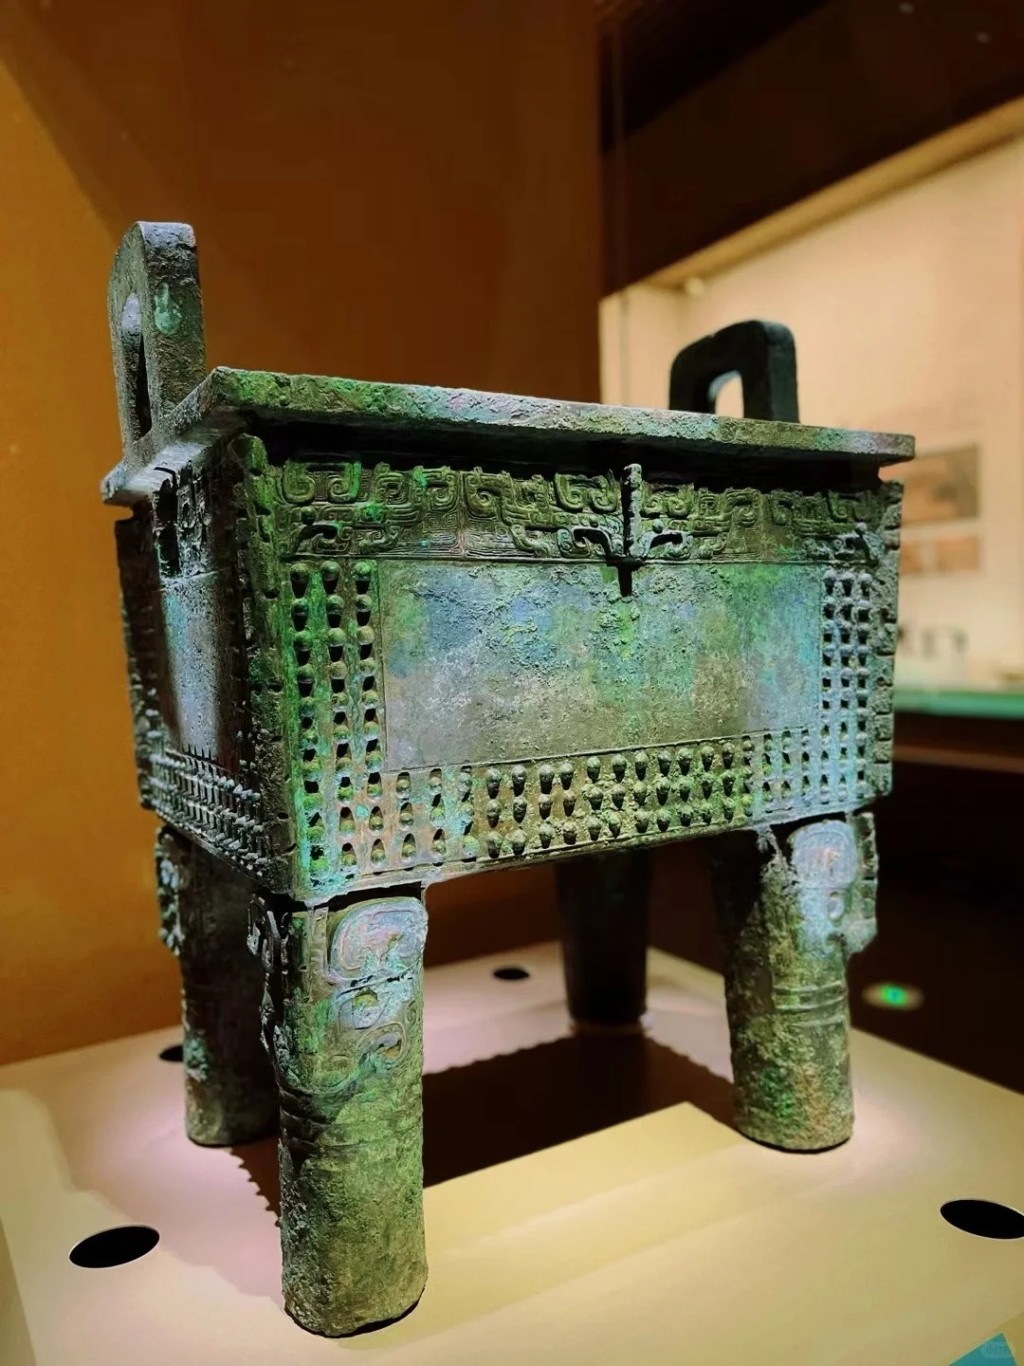 殷墟博物馆新馆将展出青铜器、陶器、玉器、甲骨等文物近4,000件套。小红书